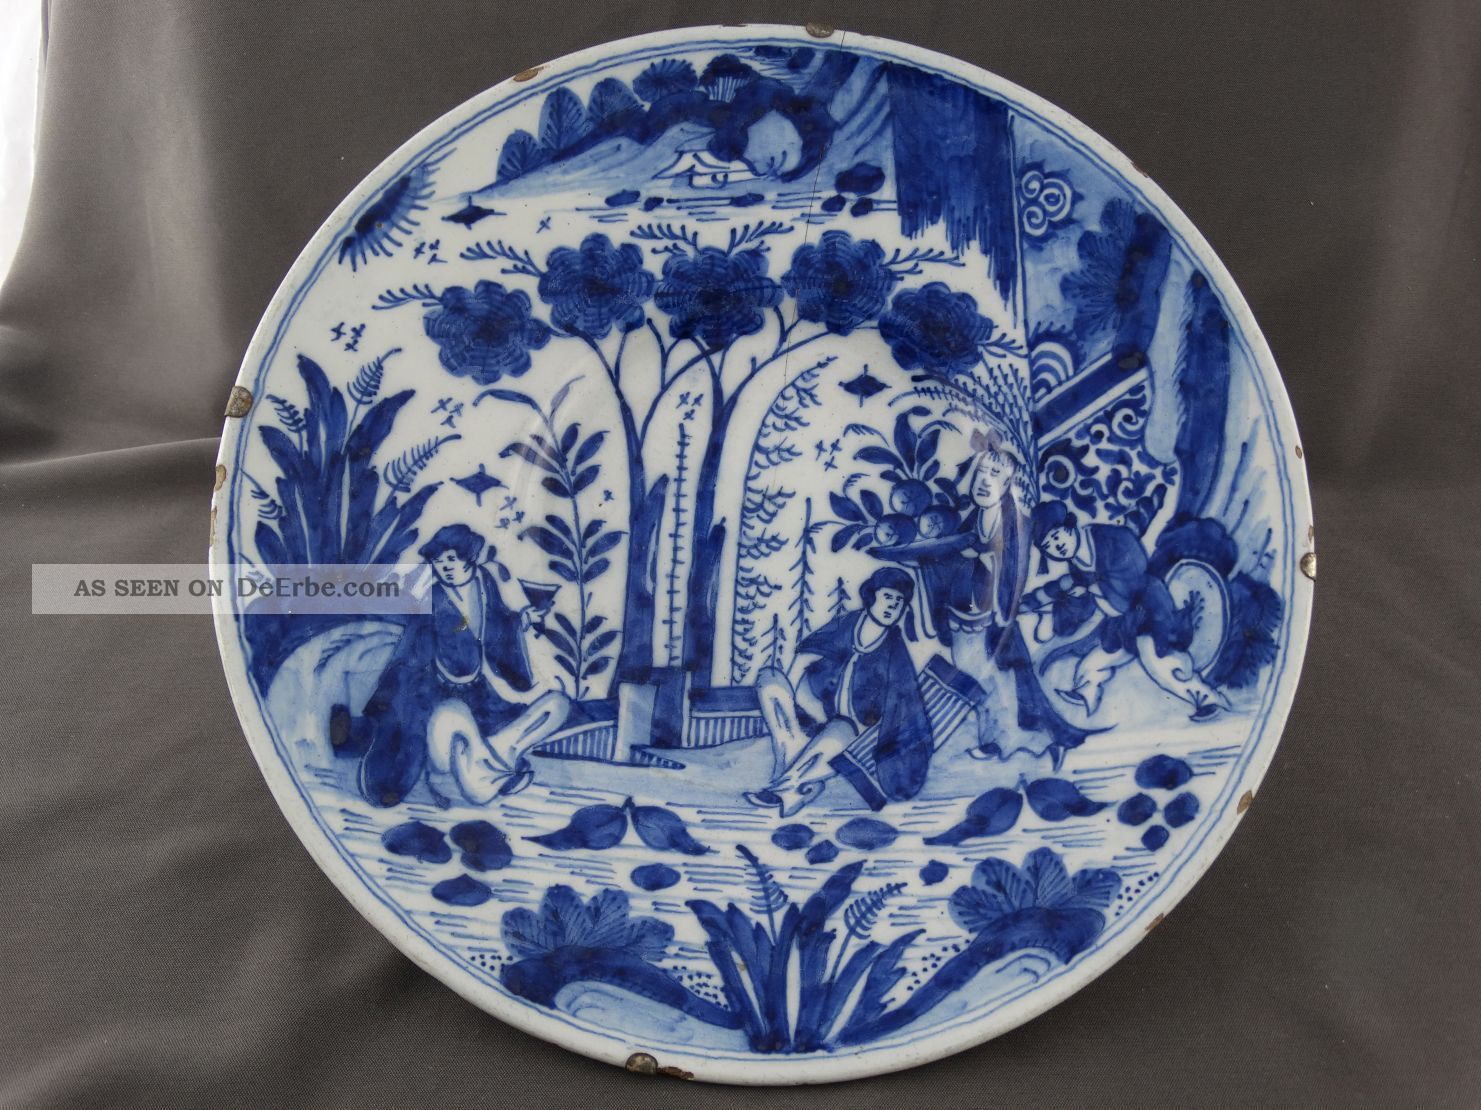 Großer Antiker Teller Keramik Vor 1800 Holland Gk / Kruyk Chin.  Dekor Personen 3 Nach Stil & Epoche Bild